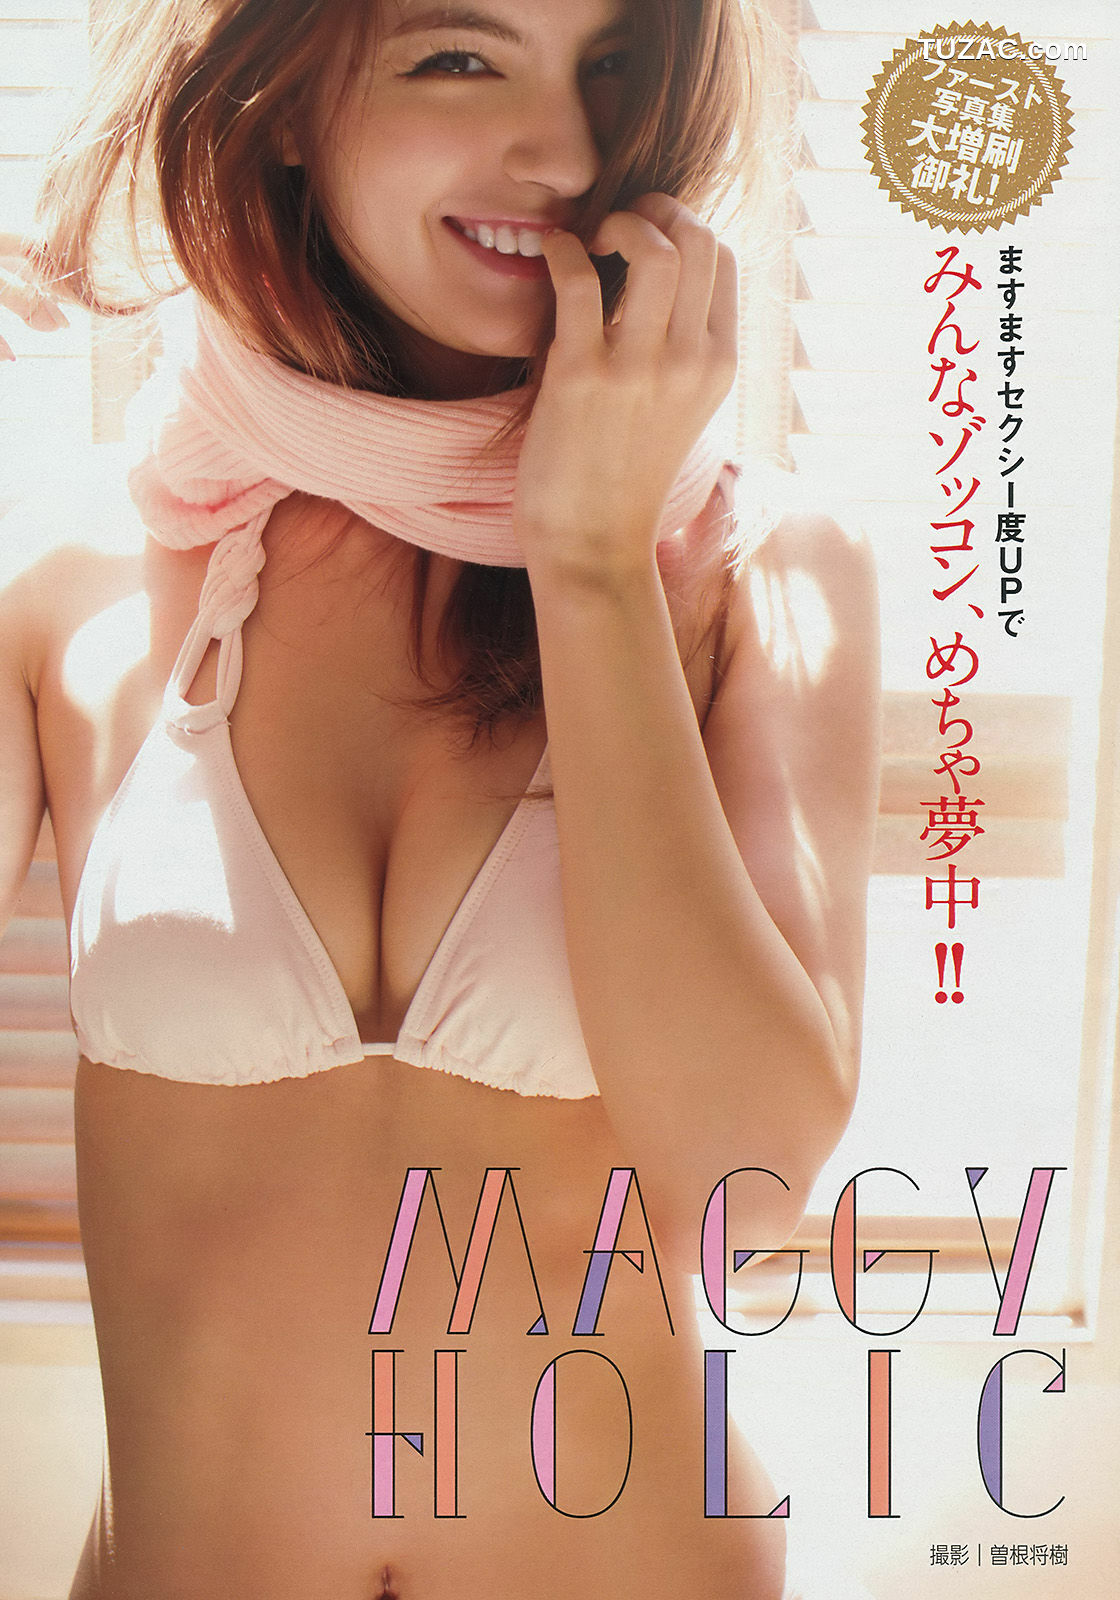 Young Magazine杂志写真_ マギー 犬童美乃梨 2014年No.26 写真杂志[10P]